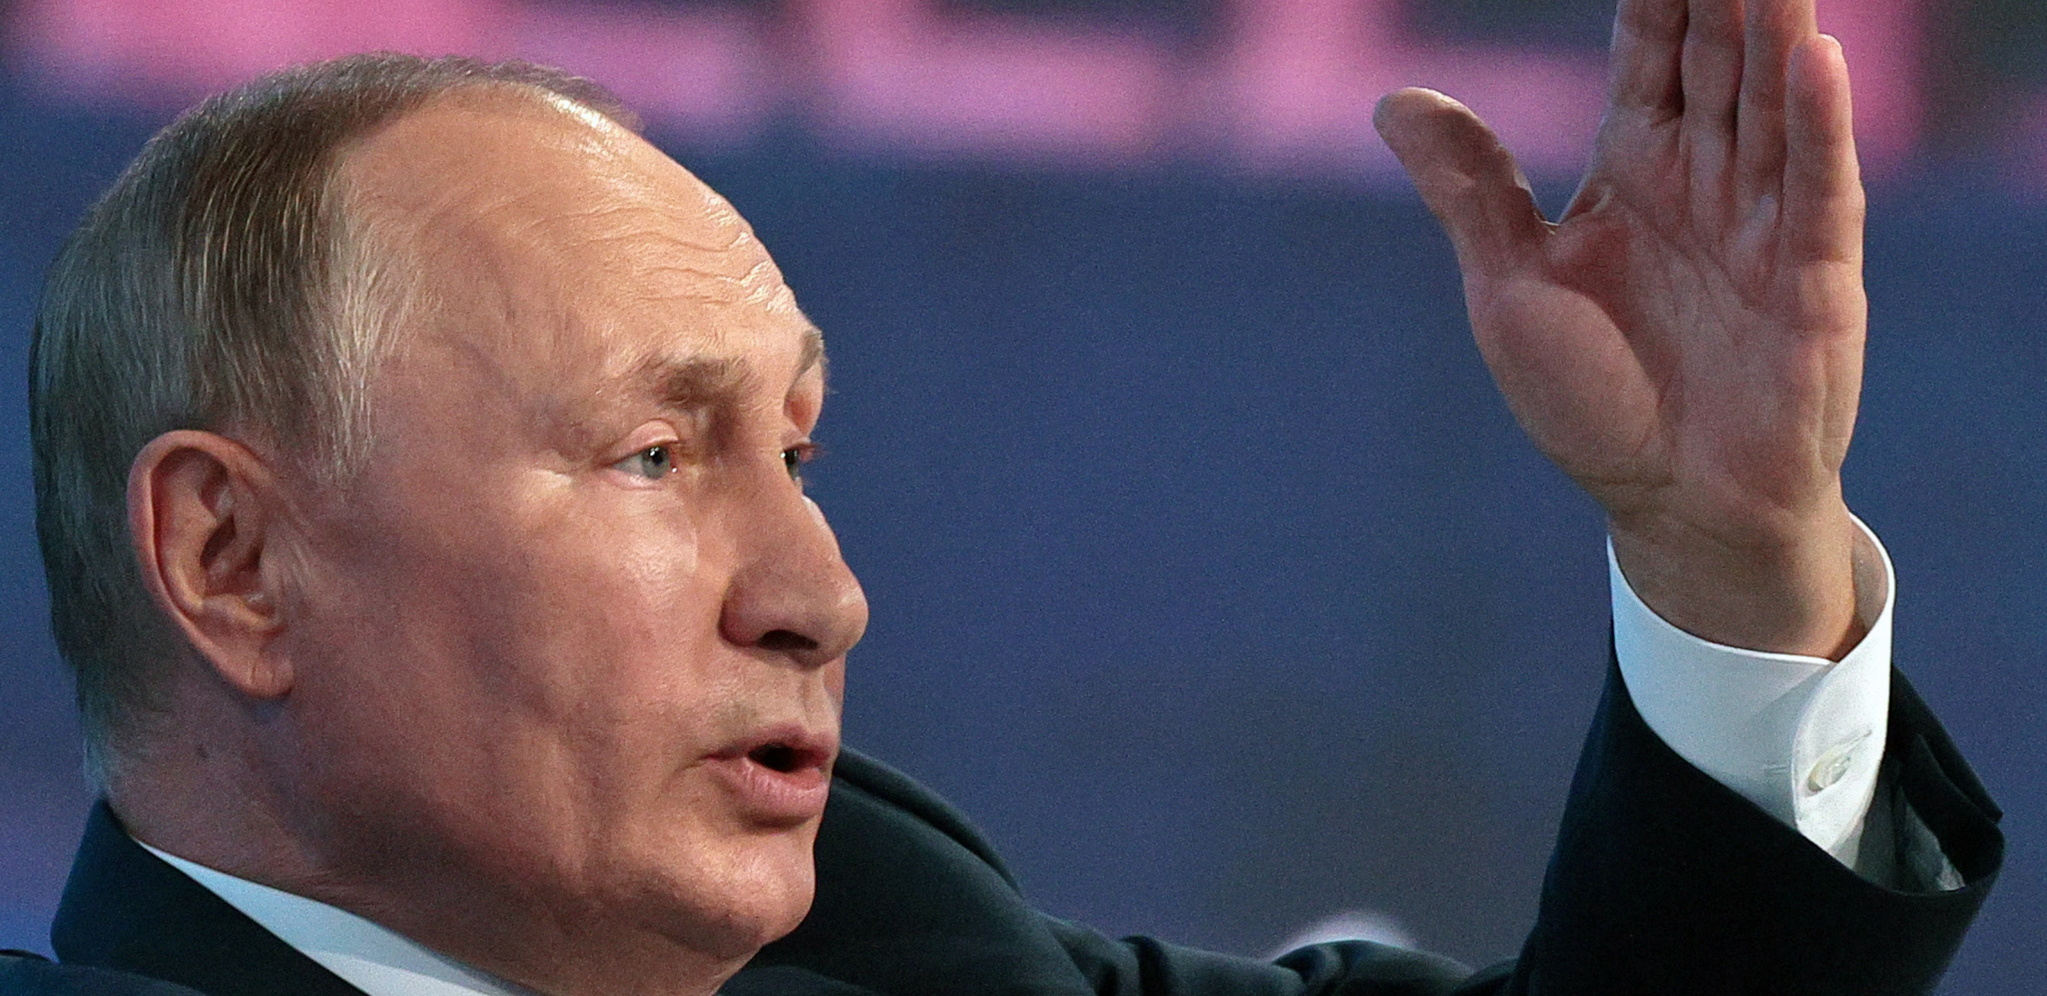 SKLANJAJTE LJUDE! Putin: Civili ne smeju da pate; Sprema se "bitka svih bitaka"